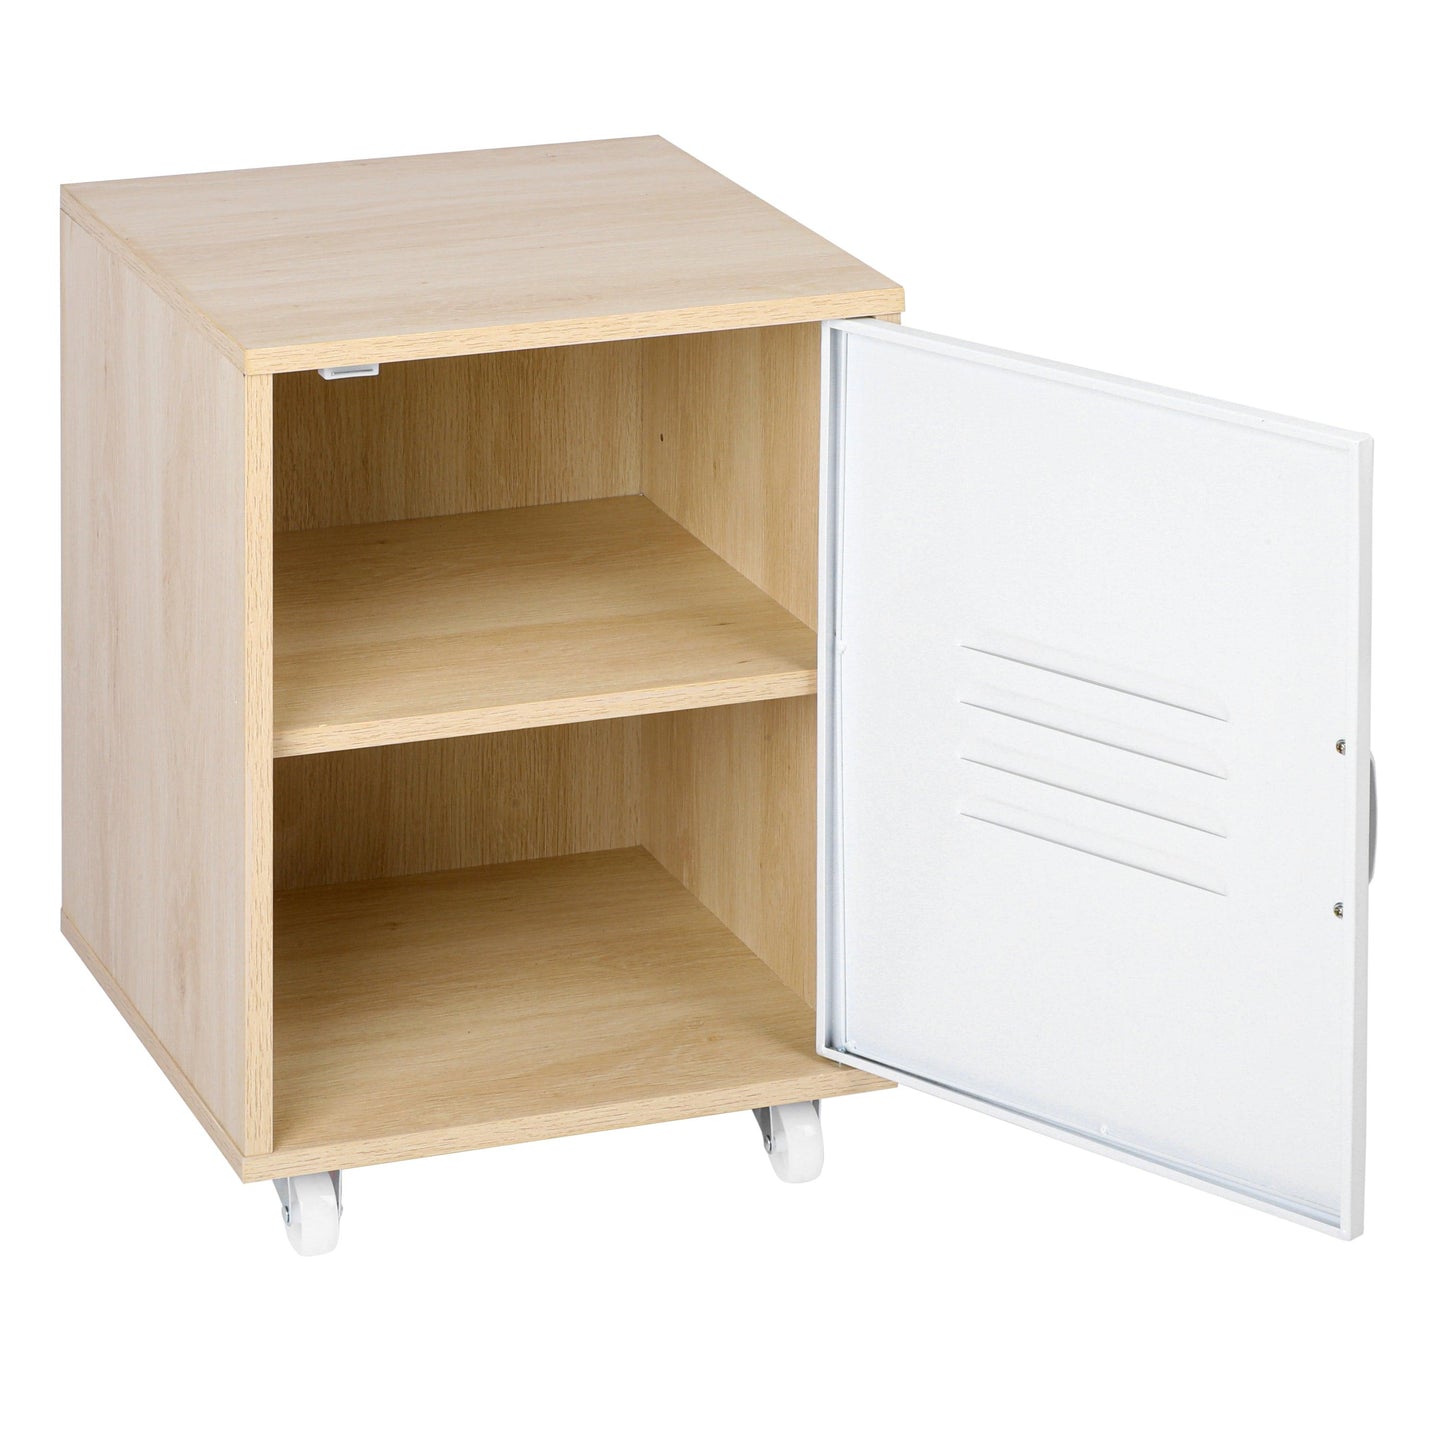 Moline wheel cabinet，1-Door Stand，Industrial Bedside Table - PremiumBrandGoods